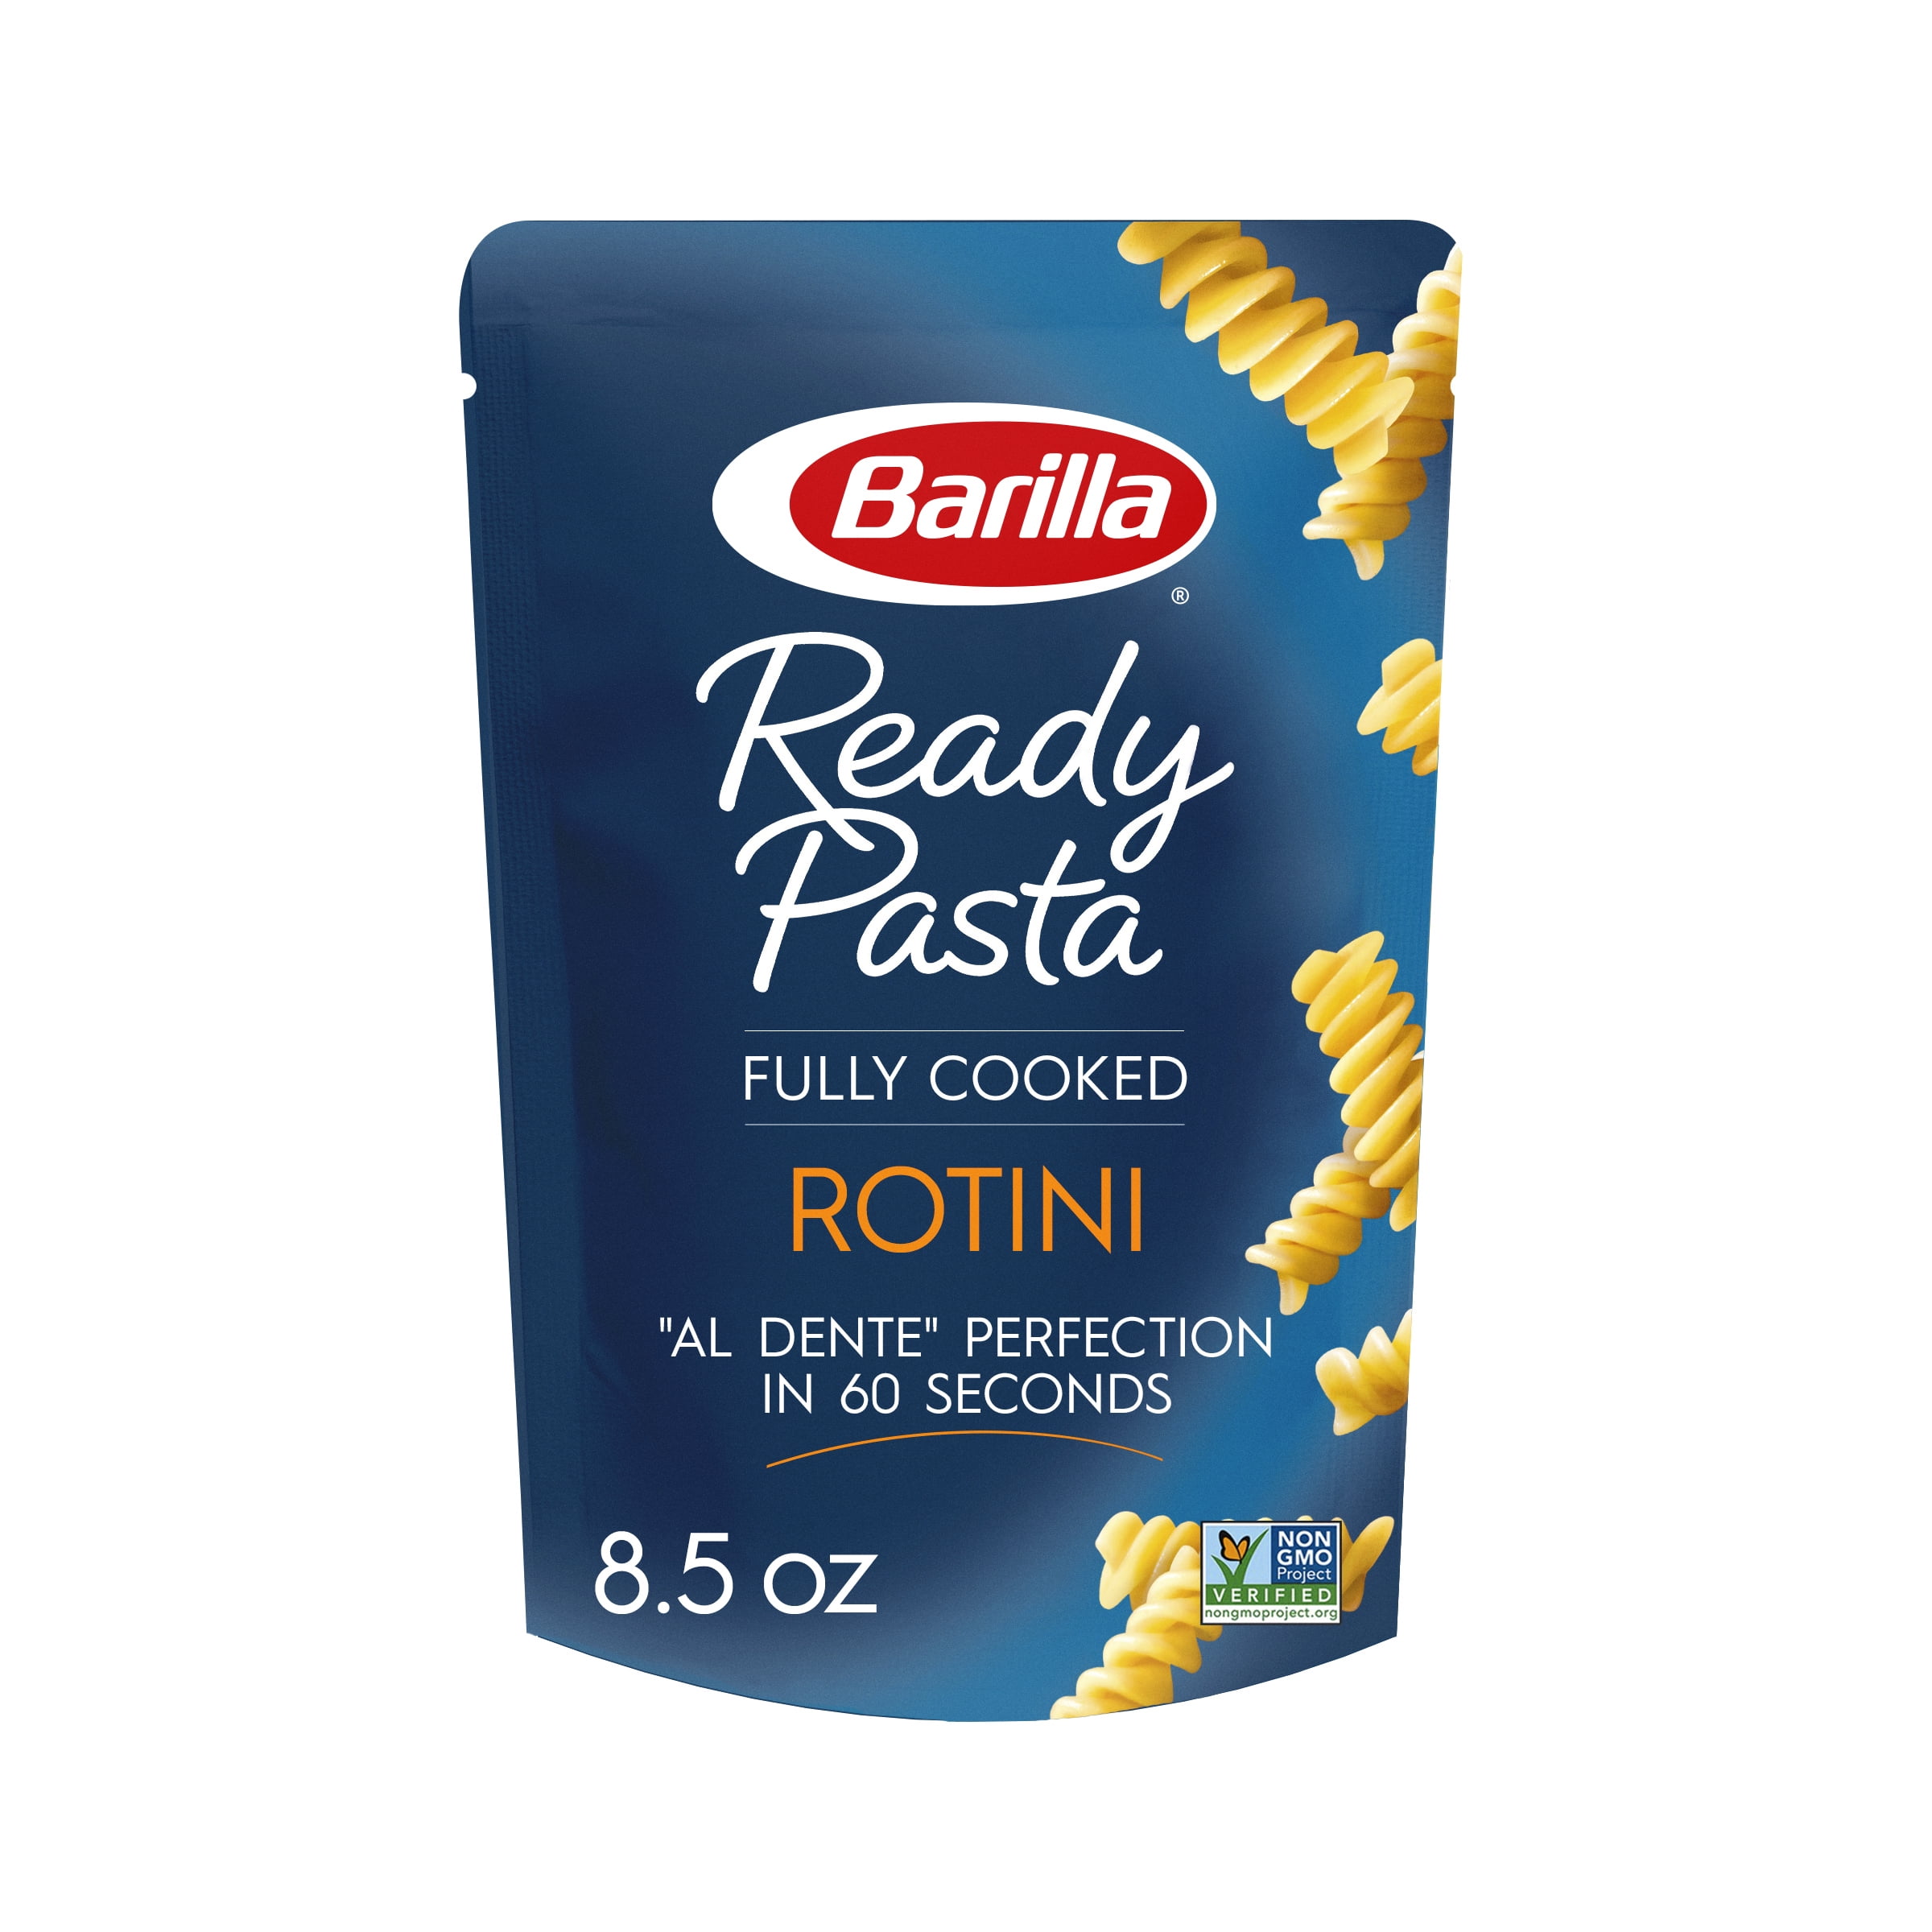 Pâtes Barilla Spaghetti Barilla Spaghetti 410g 